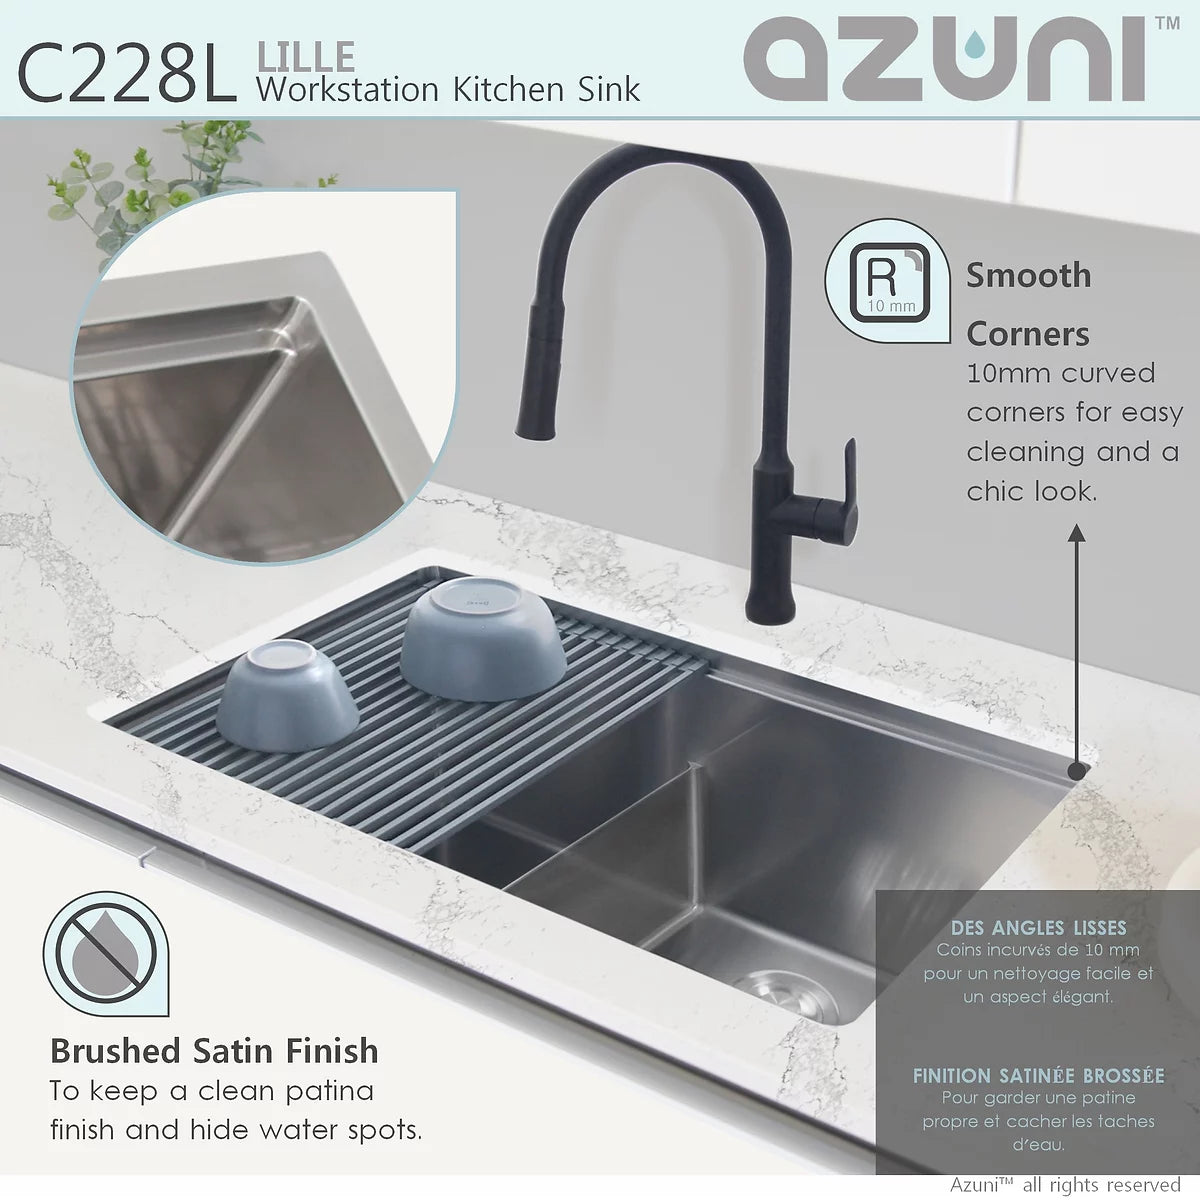 Azuni 28" x 19" Lille Workstation Double Bowl Undermount Kitchen Sink Stainless Steel C228l